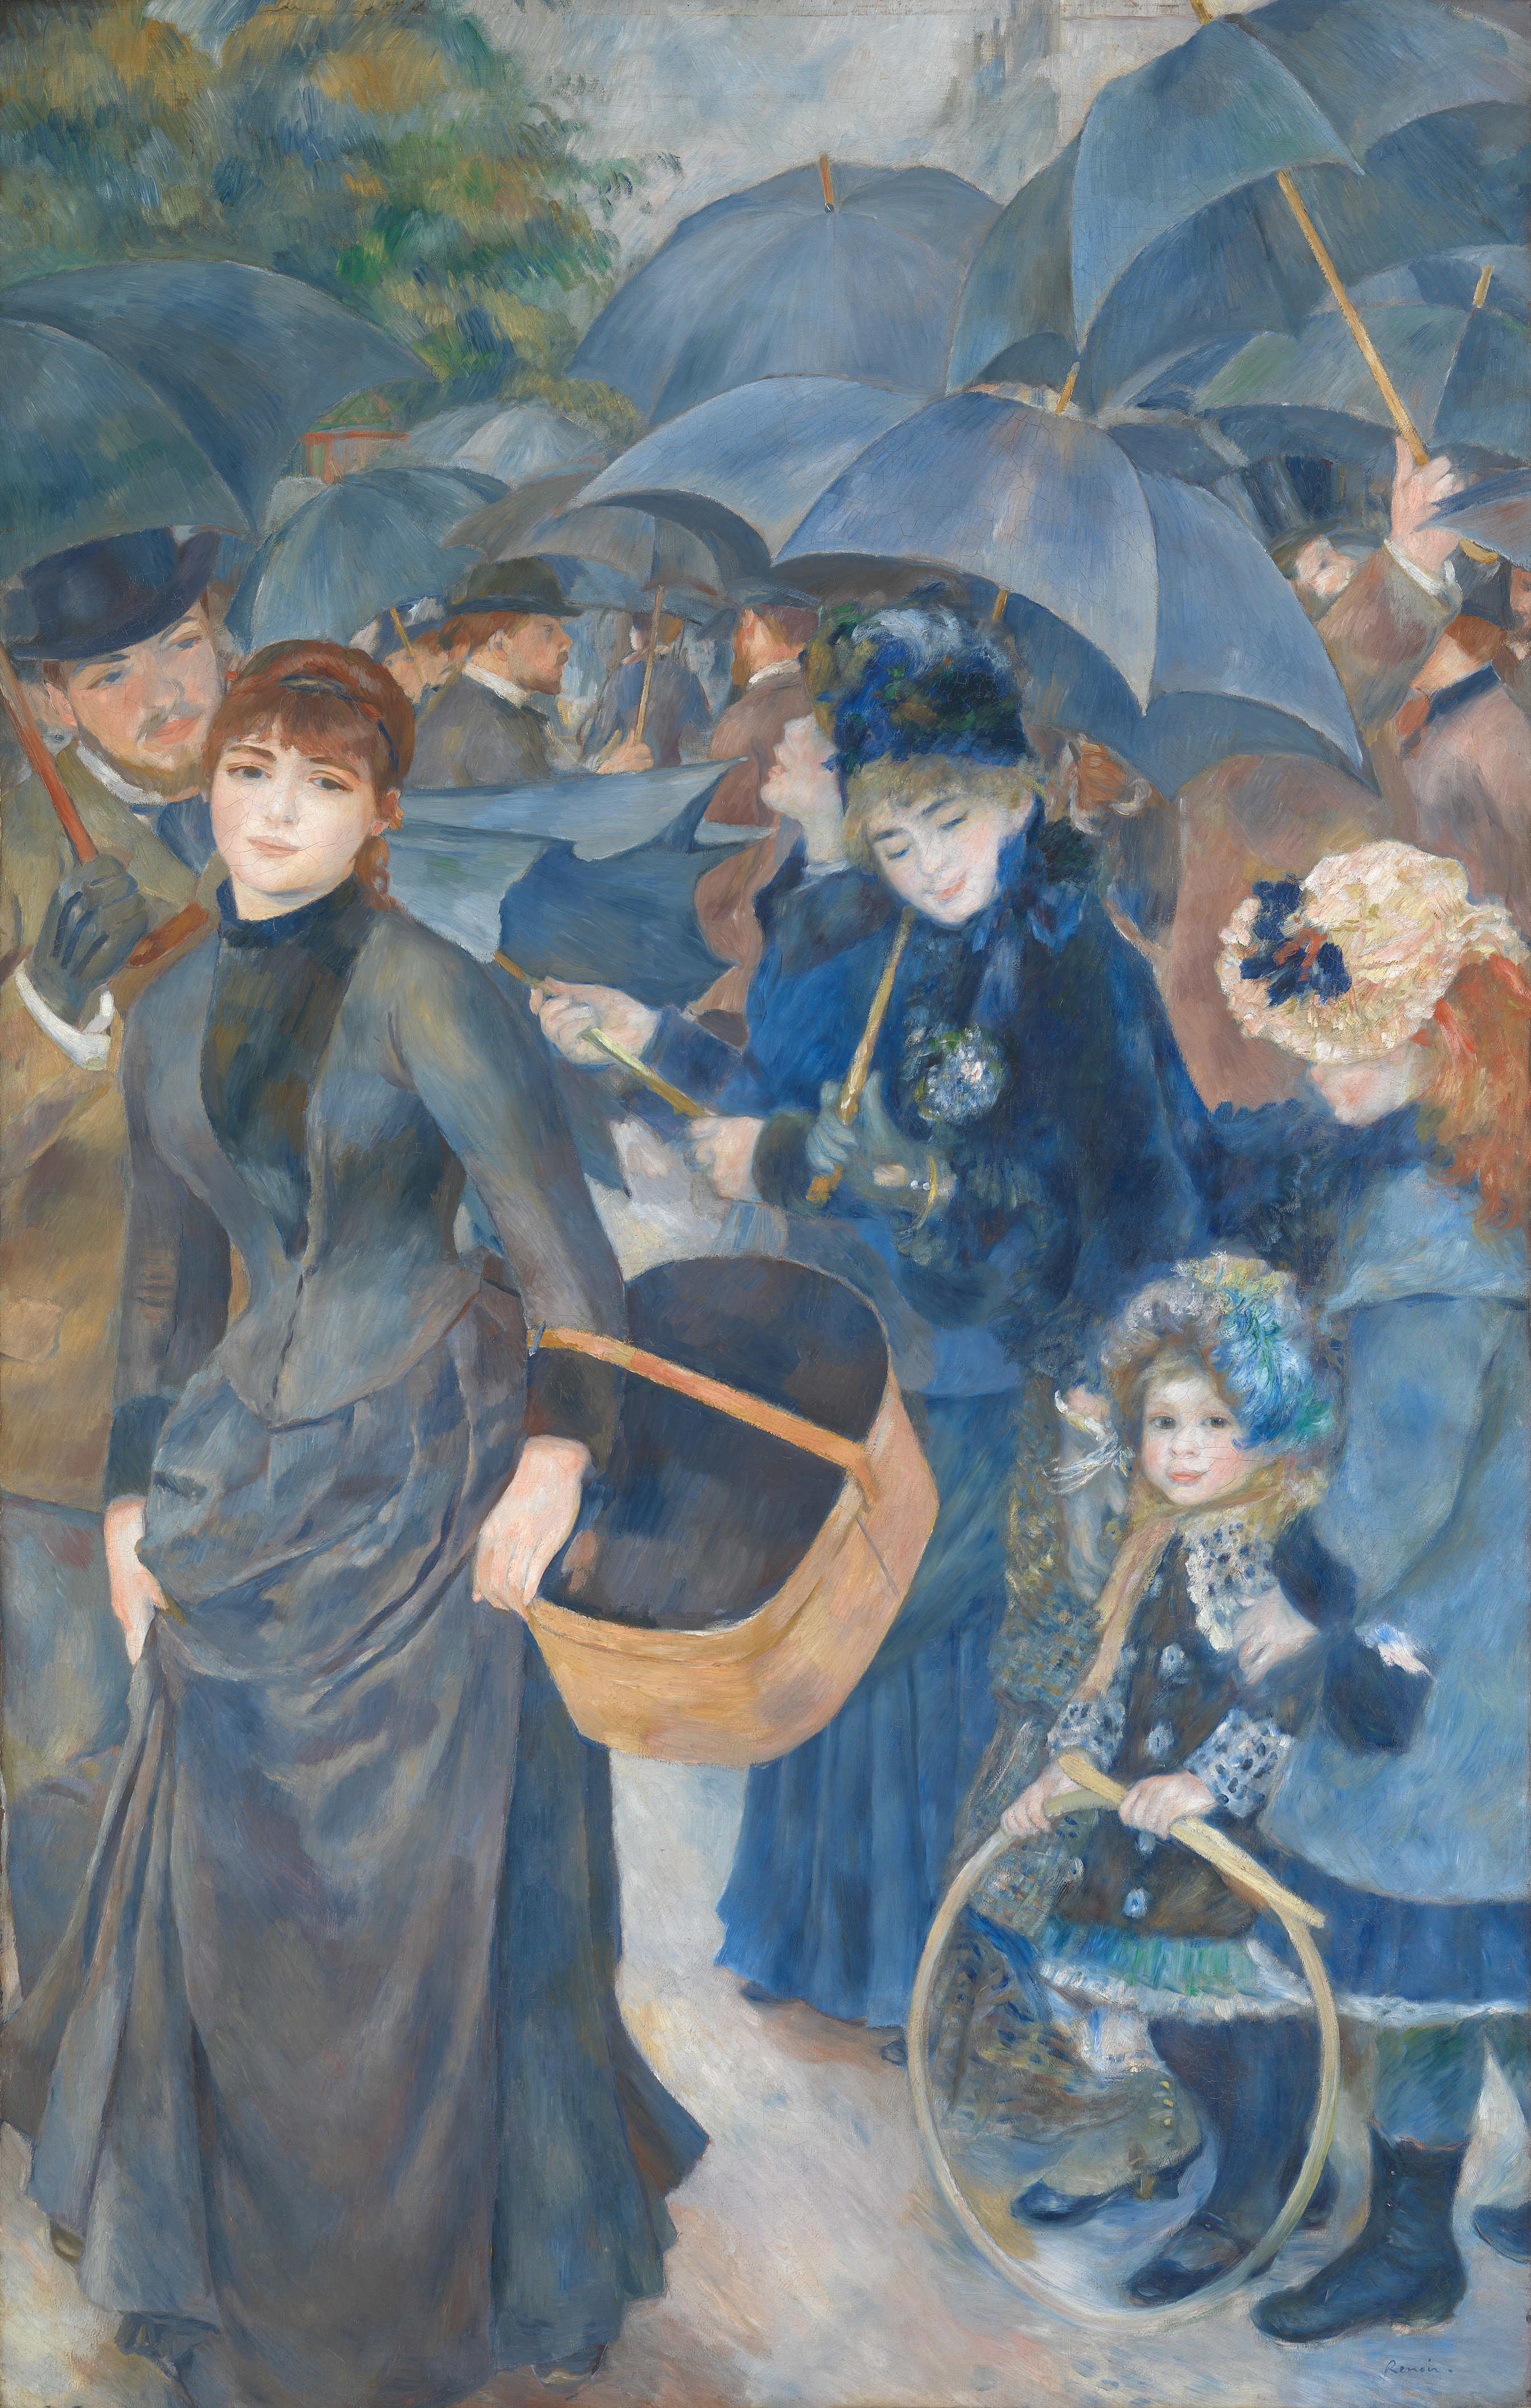 Los Paraguas by Pierre-Auguste Renoir - 1883 - 180 × 115 cm Galería Nacional